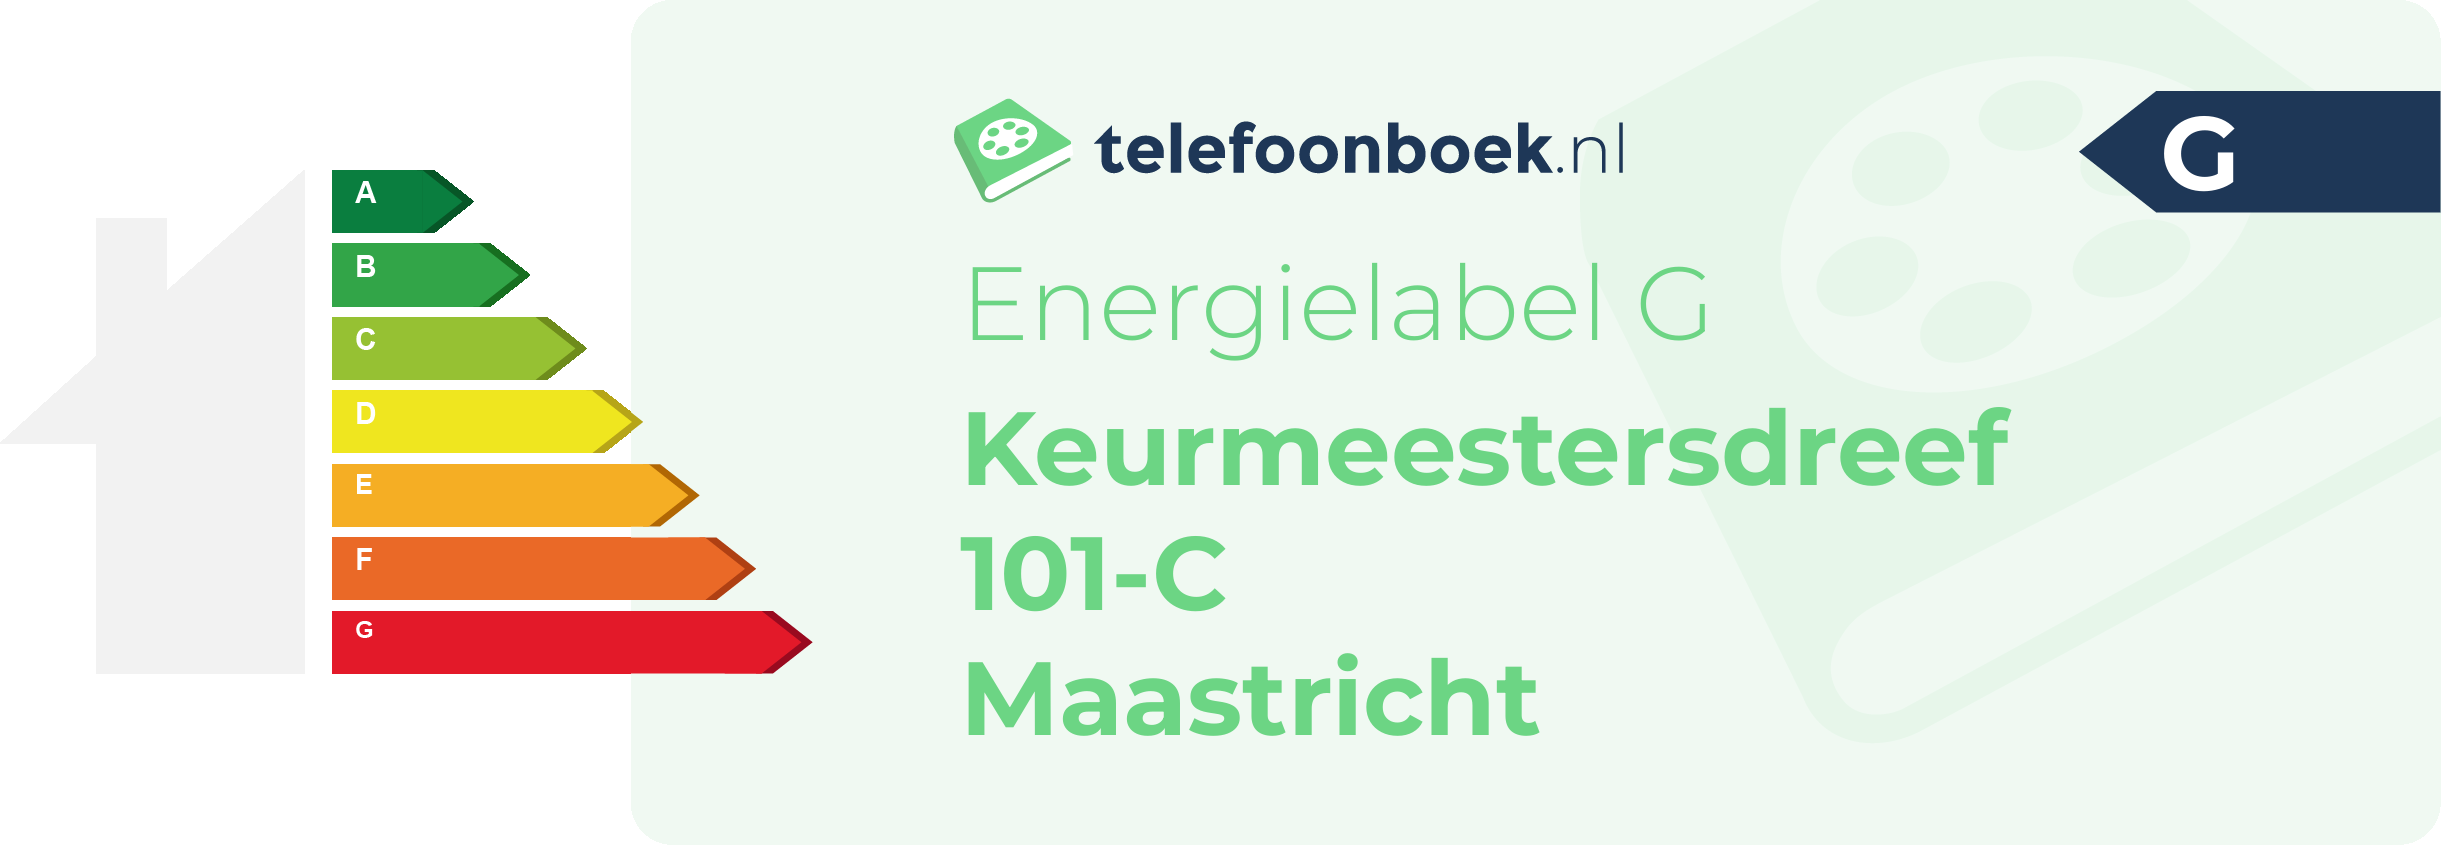 Energielabel Keurmeestersdreef 101-C Maastricht